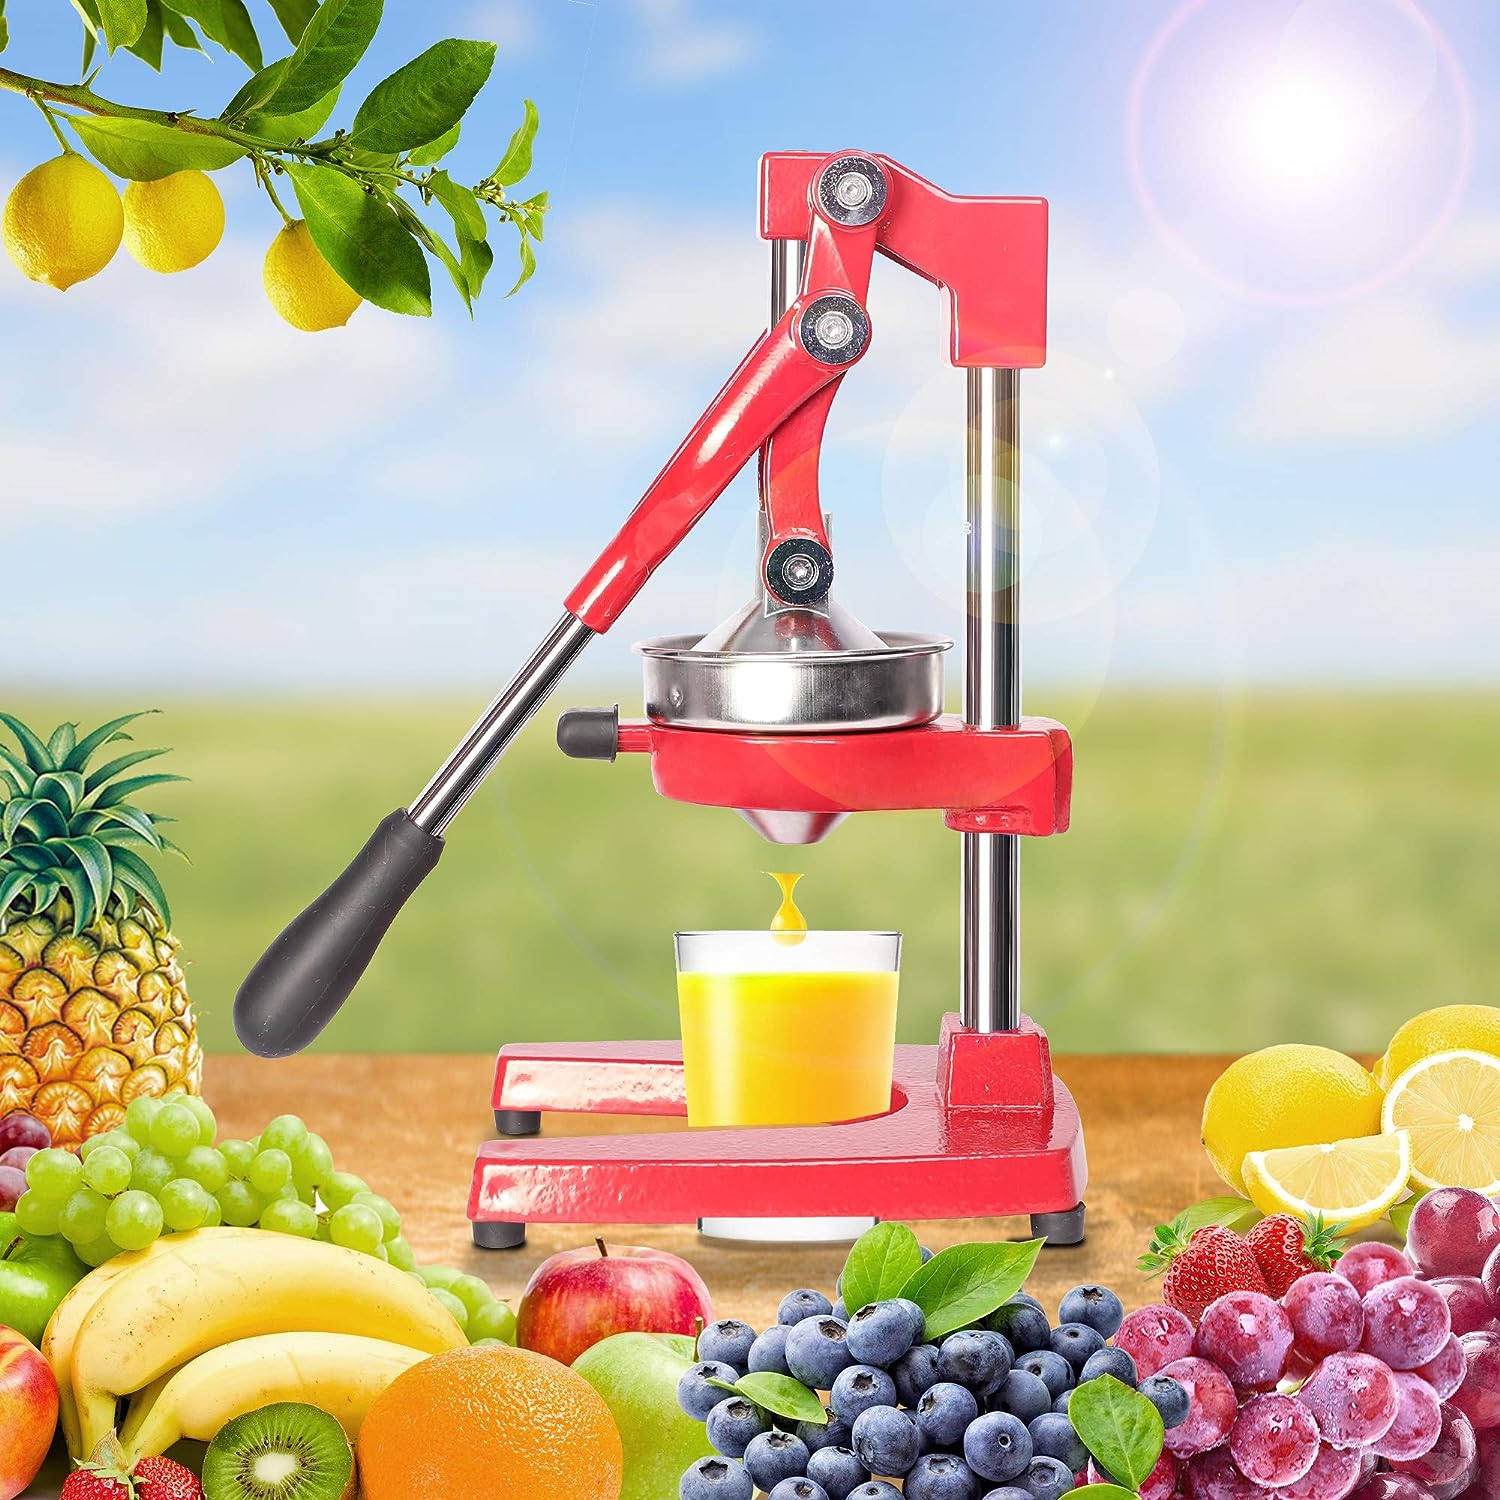 Manual Citrus Juicers, Professional Hand Press Orange Lemon Citrus Squeezer, Red